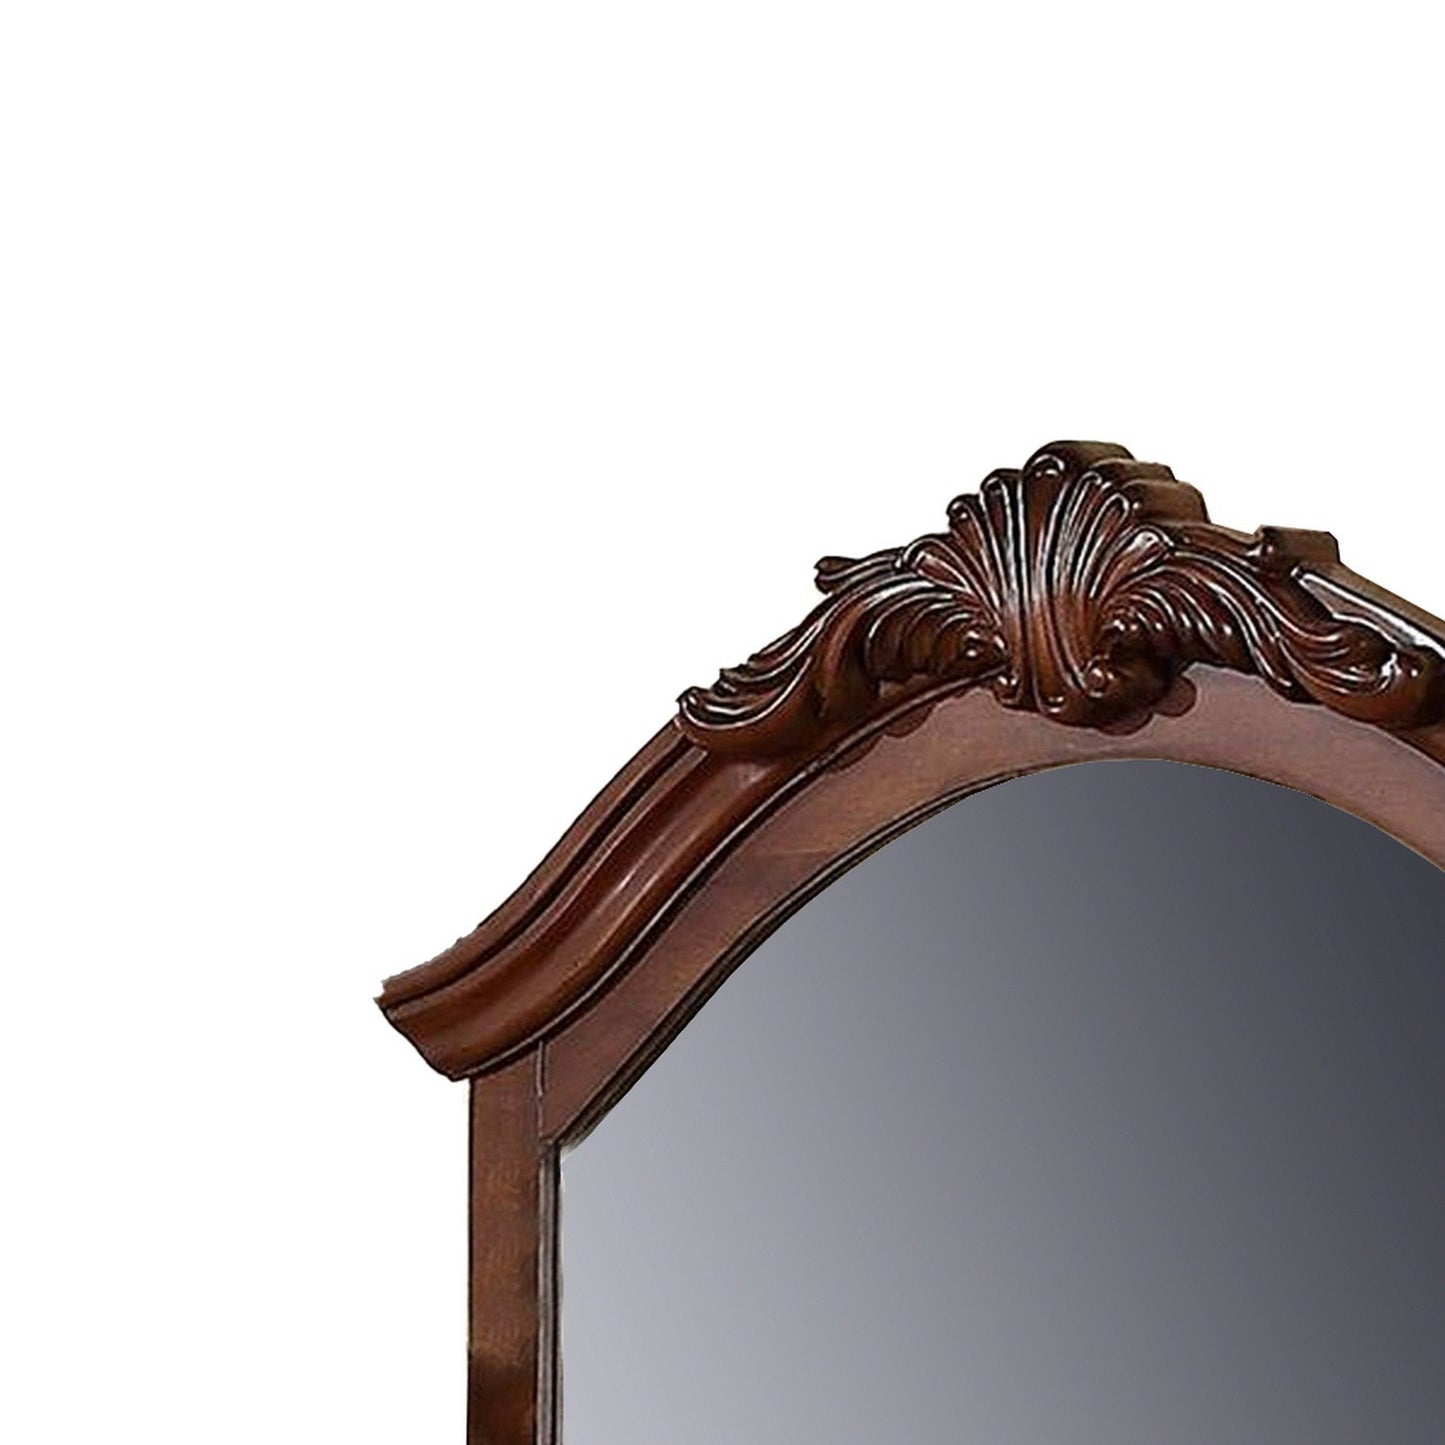 Benzara 42" Brown Crowned Top Wooden Framed Mirror